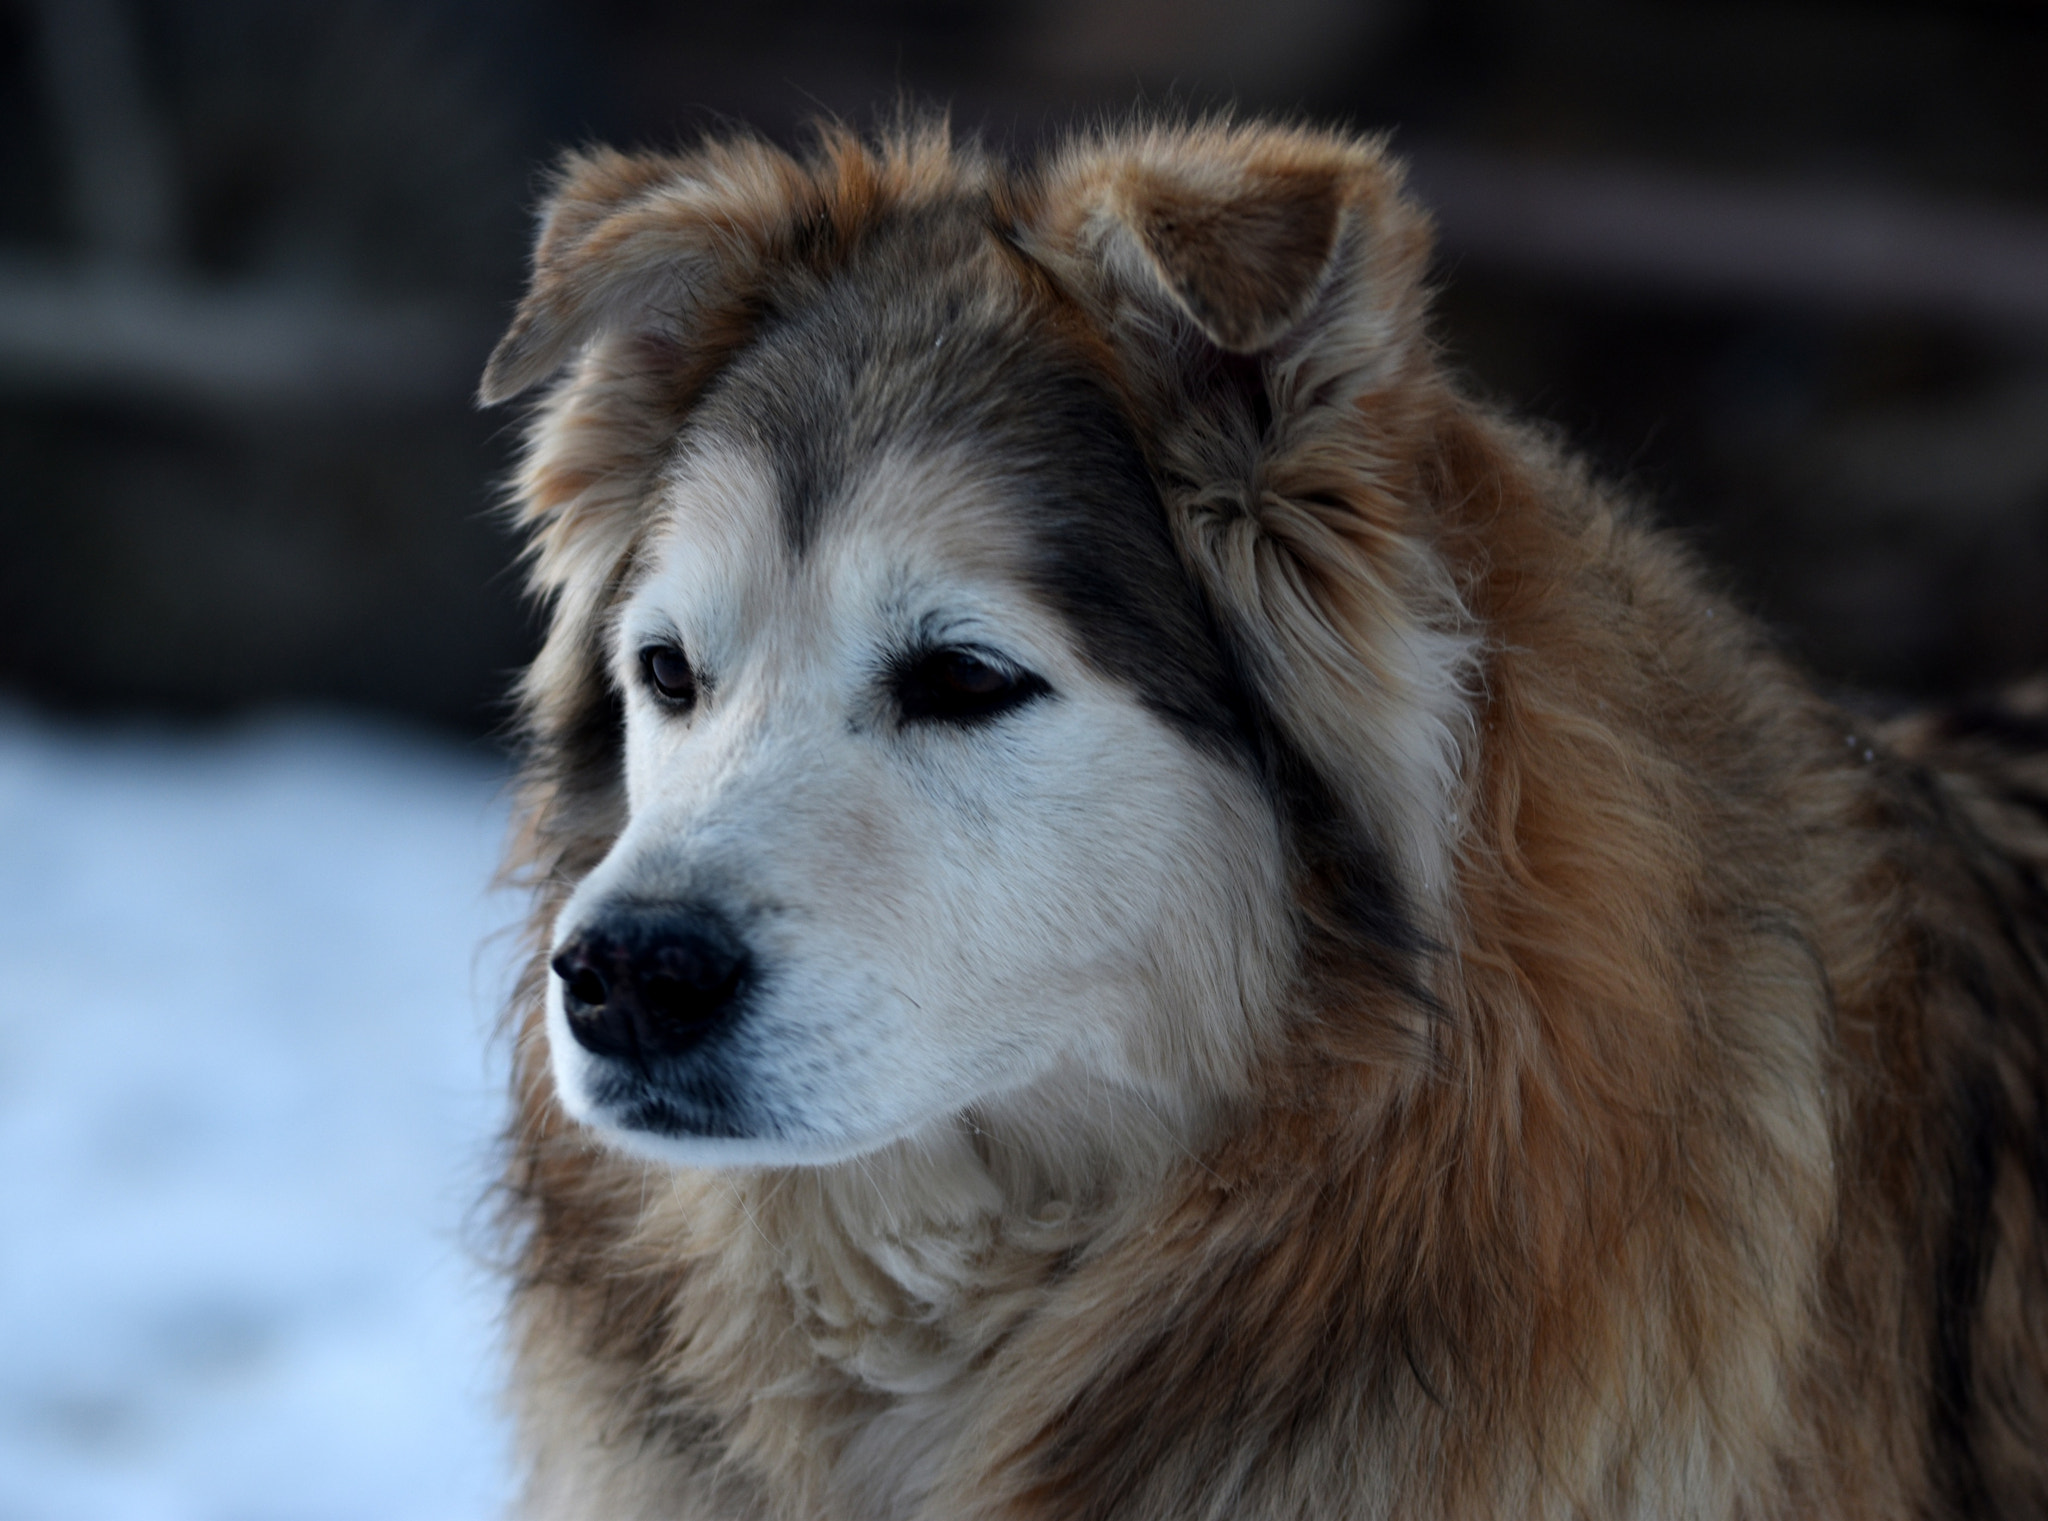 Nikon D5500 sample photo. Lassie come home - best friend photography